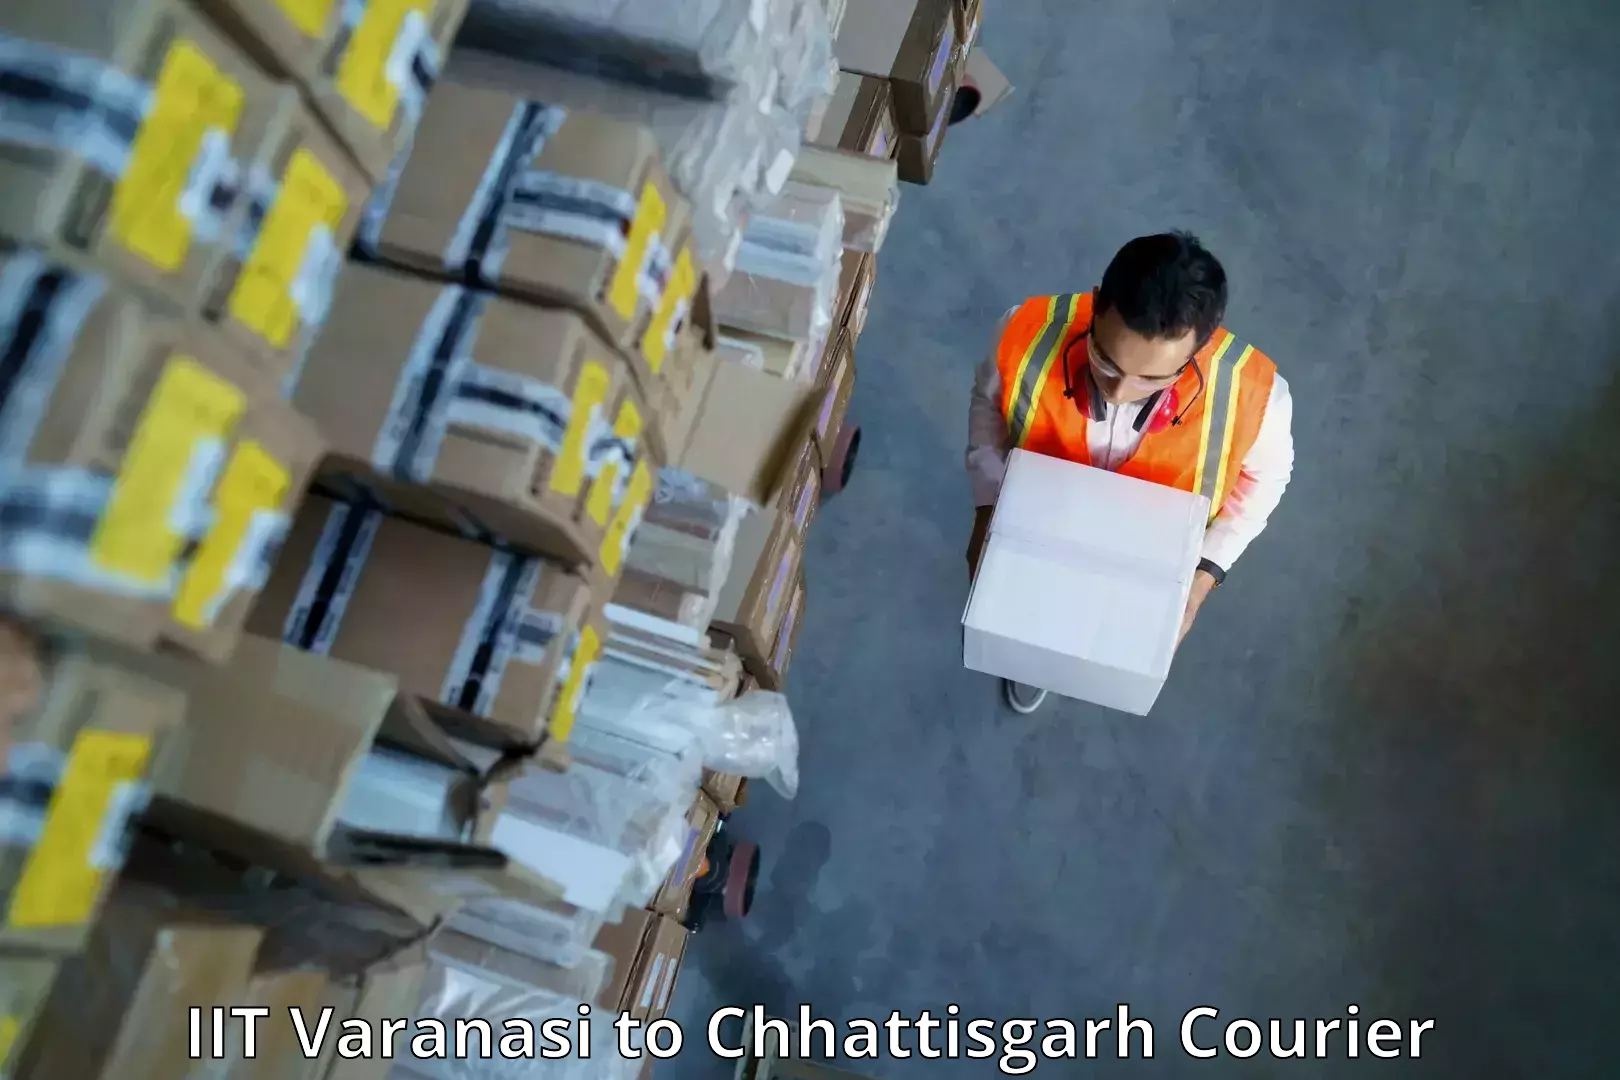 Urgent courier needs IIT Varanasi to Dantewada